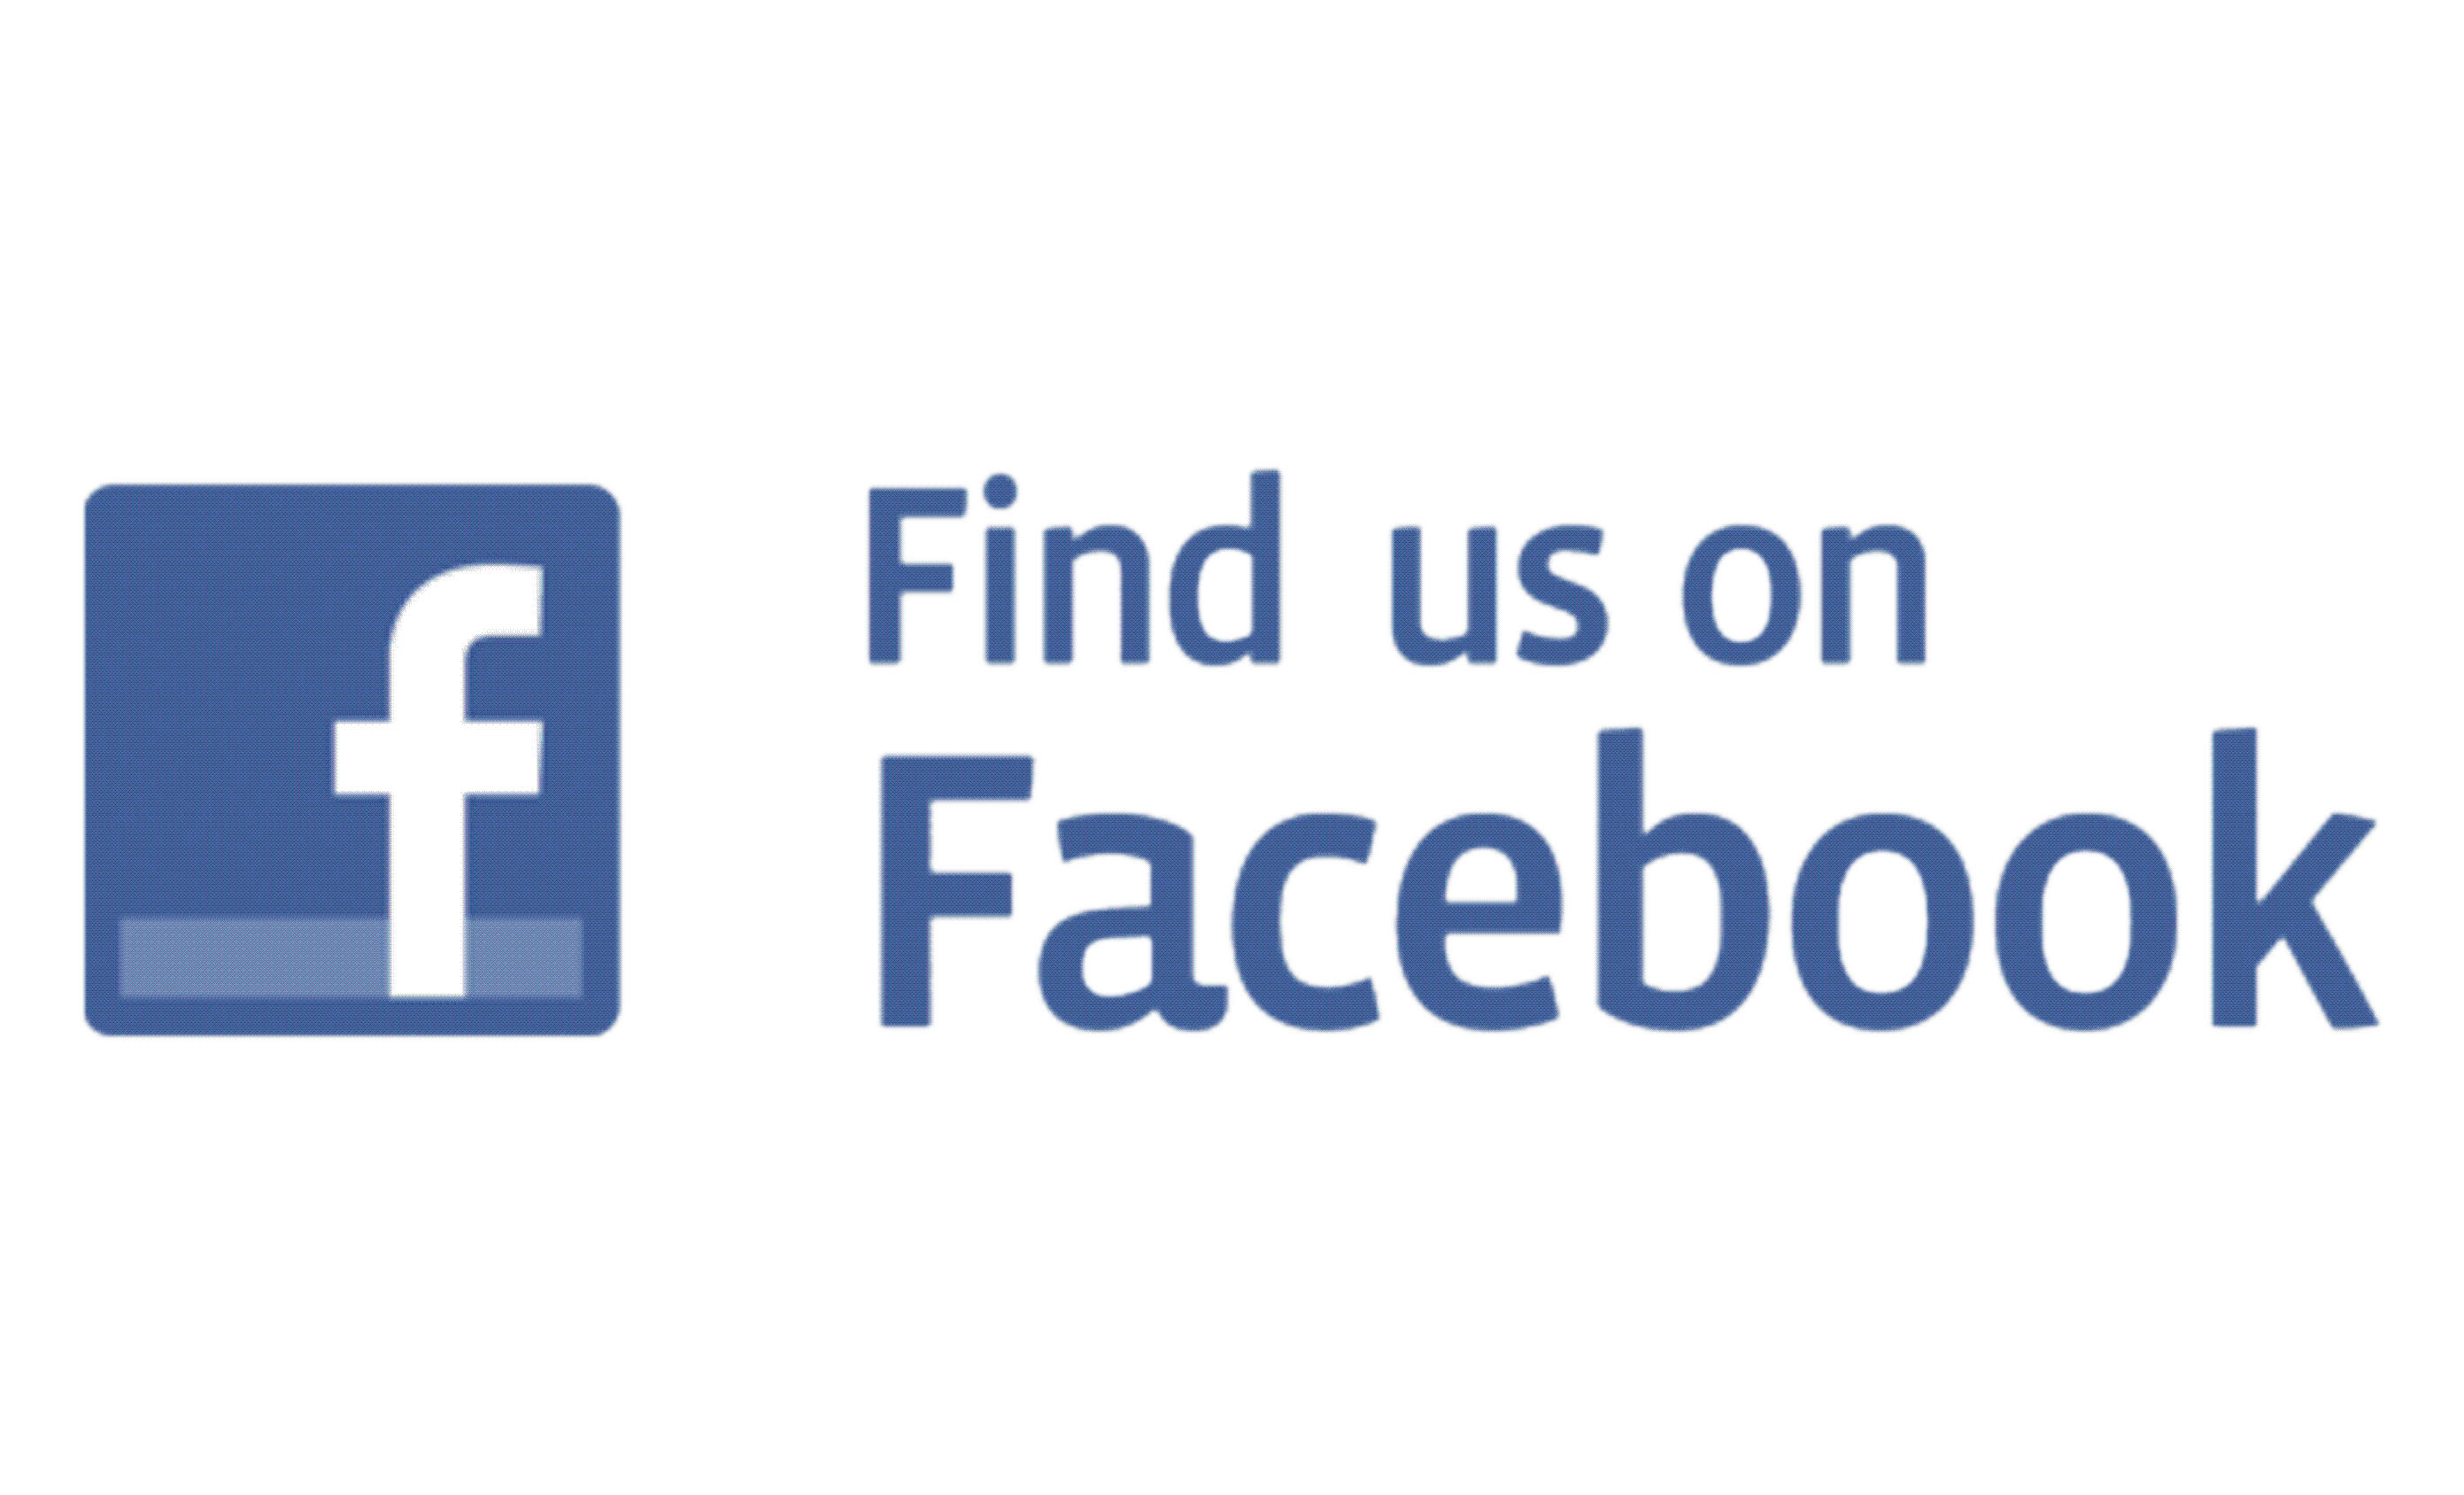 Find Us On Facebook Official Logo - Find us on facebook Logos